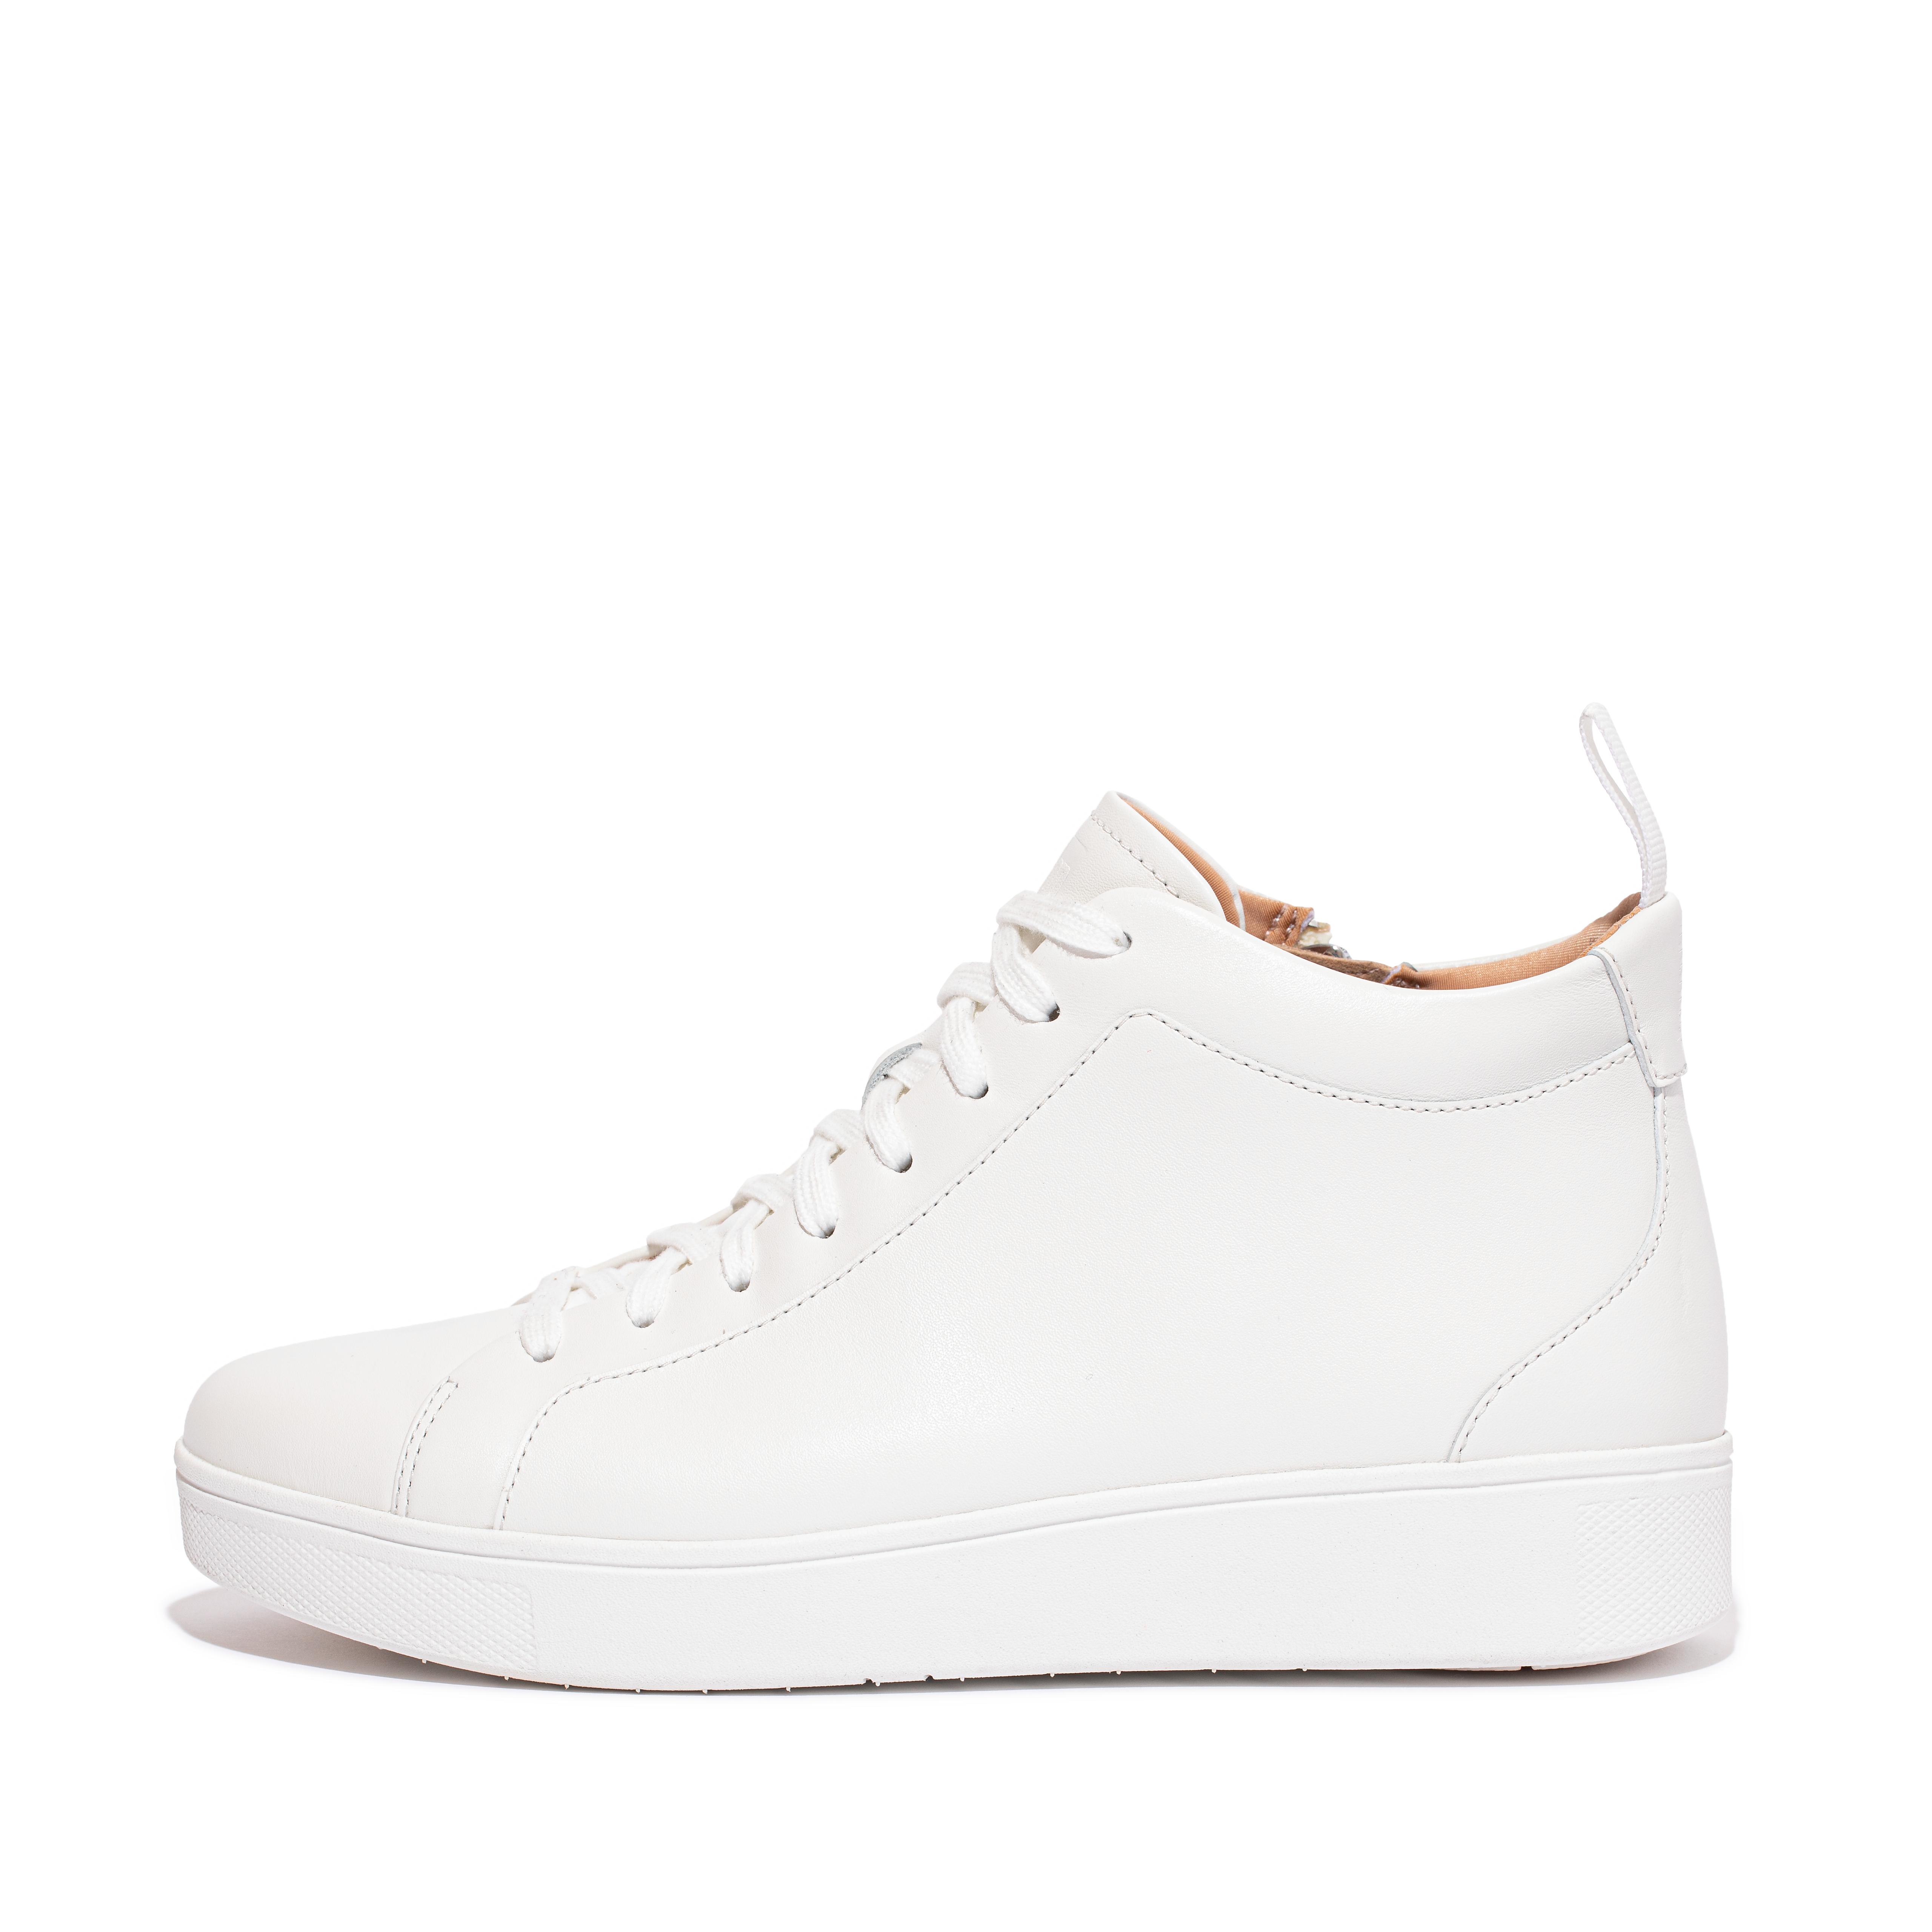 핏플랍 스니커즈 FitFlop RALLY Leather High-Top Sneakers,Urban White